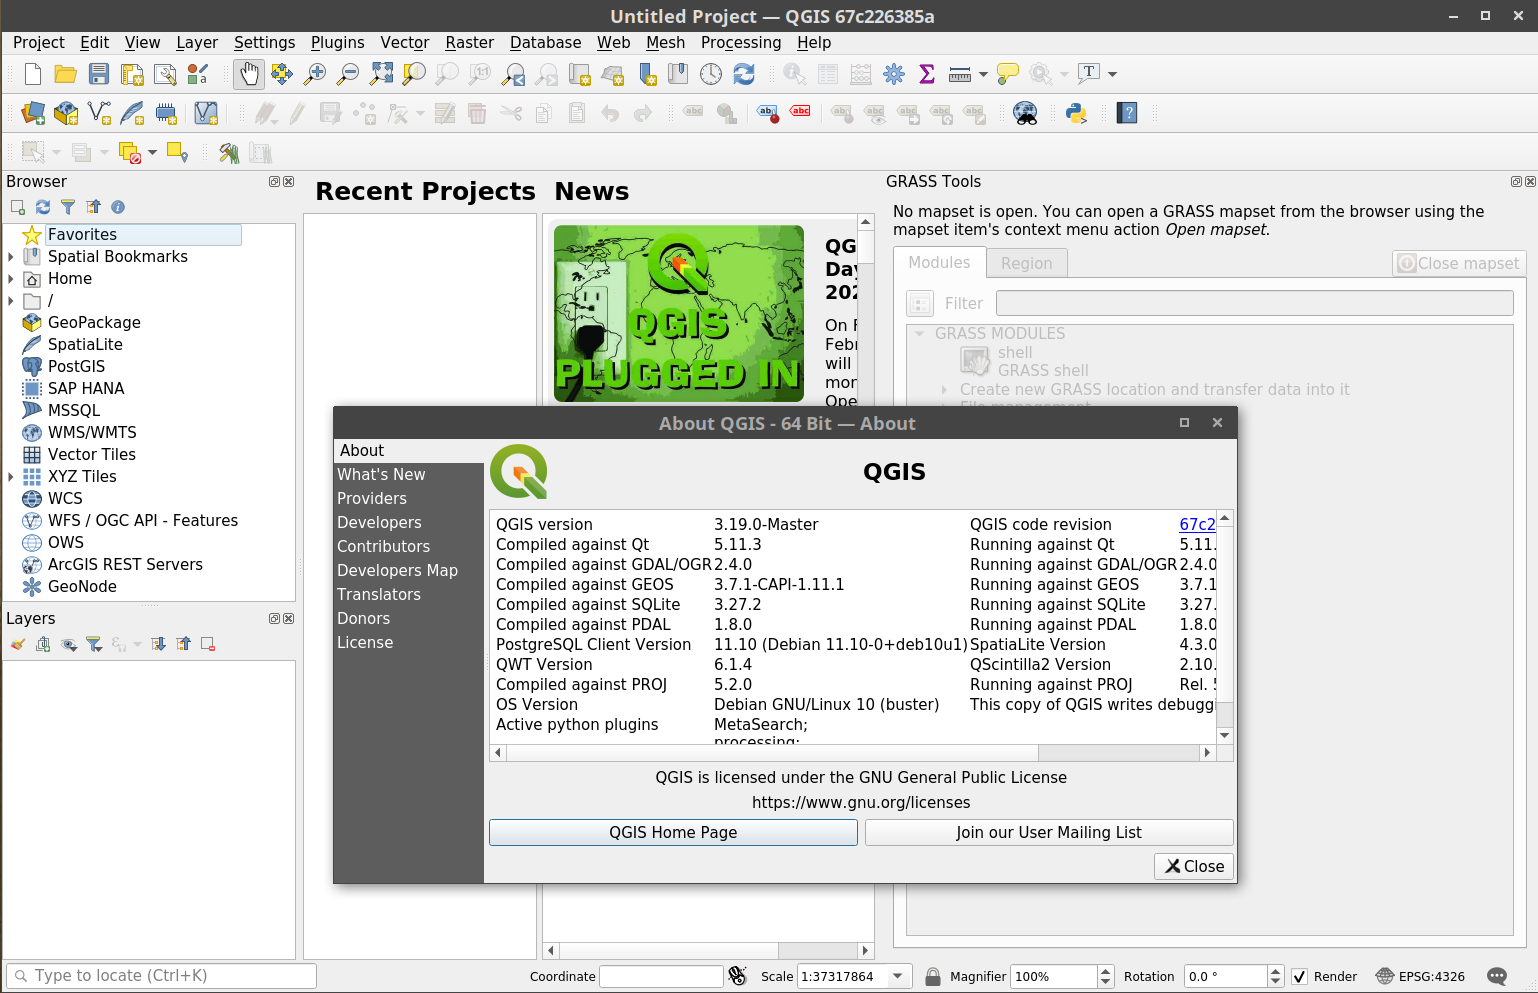 Captura de la versión en desarrollo de QGIS corriendo con Docker y el plugin de GRASS activado